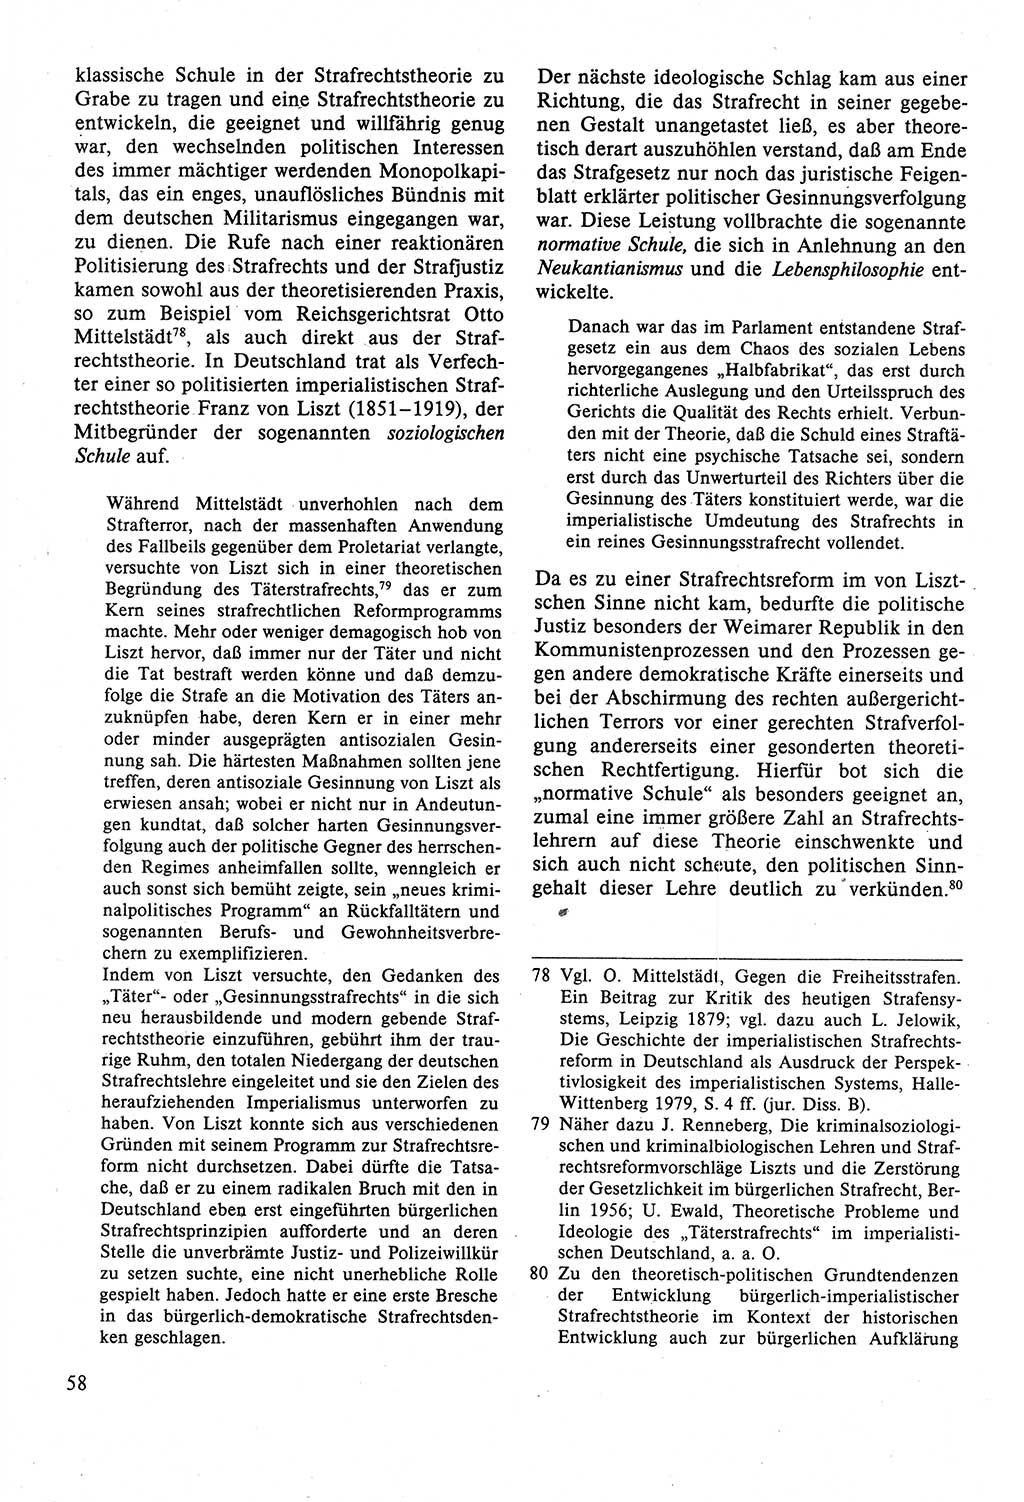 Strafrecht der DDR (Deutsche Demokratische Republik), Lehrbuch 1988, Seite 58 (Strafr. DDR Lb. 1988, S. 58)